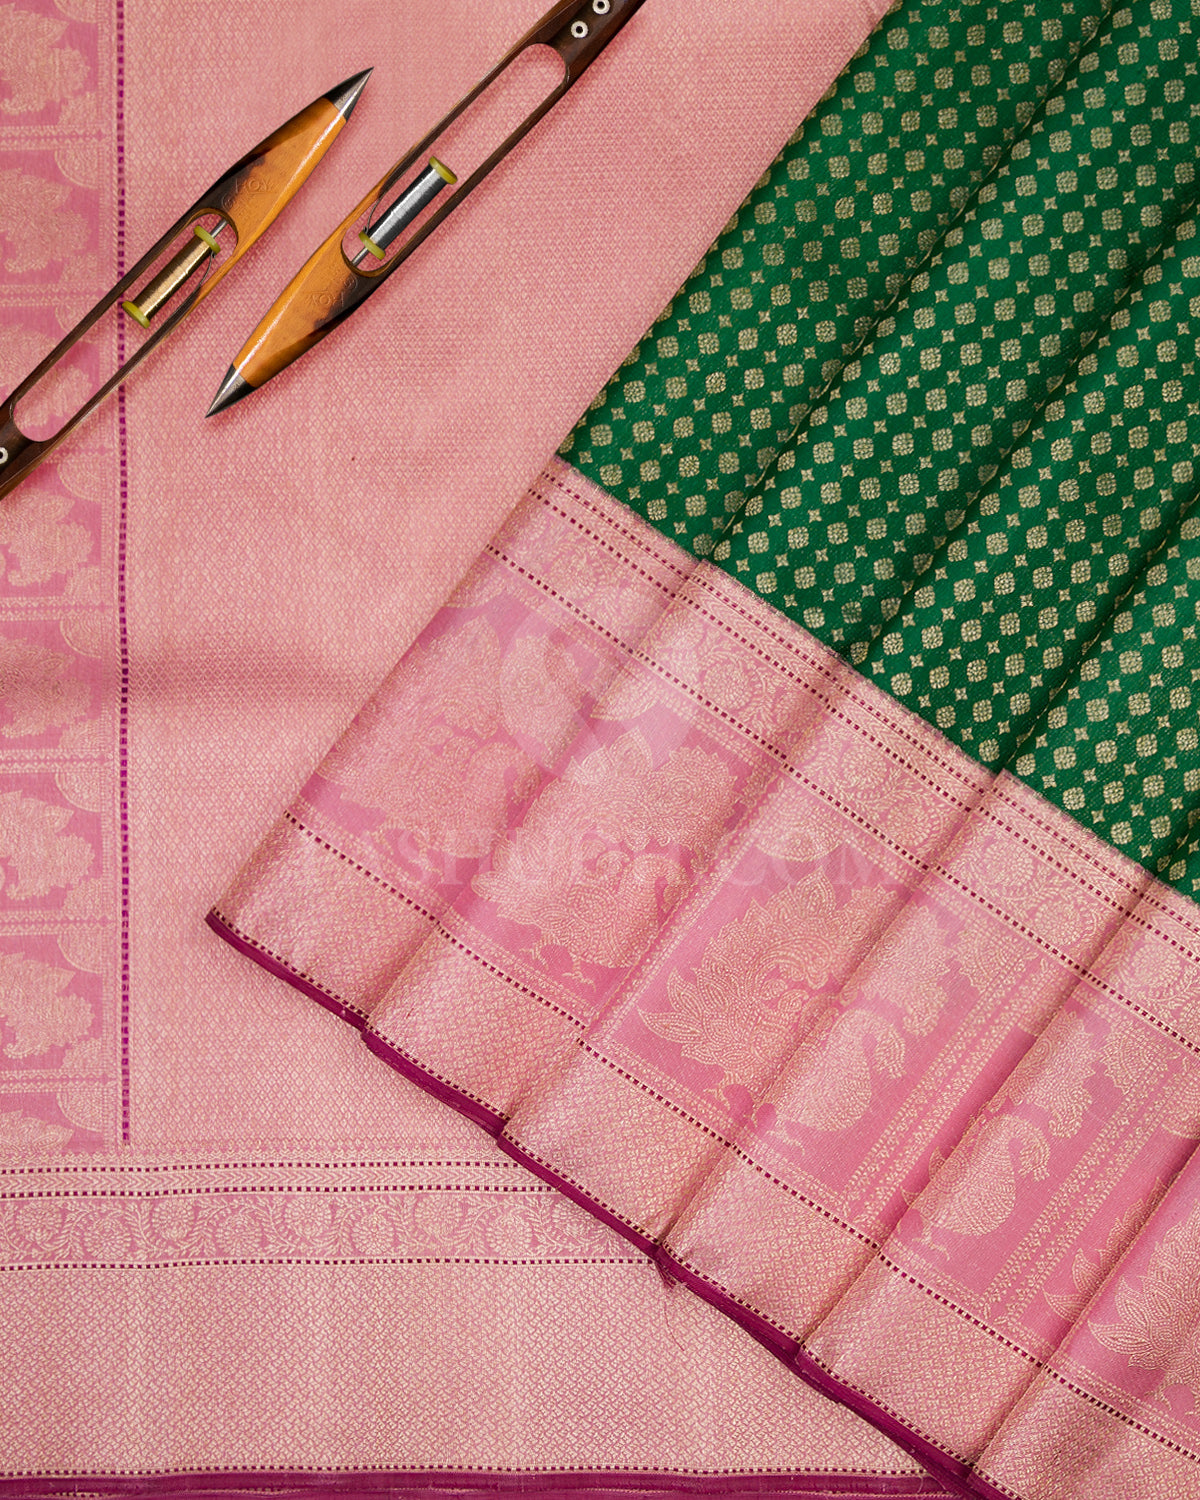 Emerald Green and Baby Pink Pure Zari Kanjivaram Silk Saree - S709 - View 3